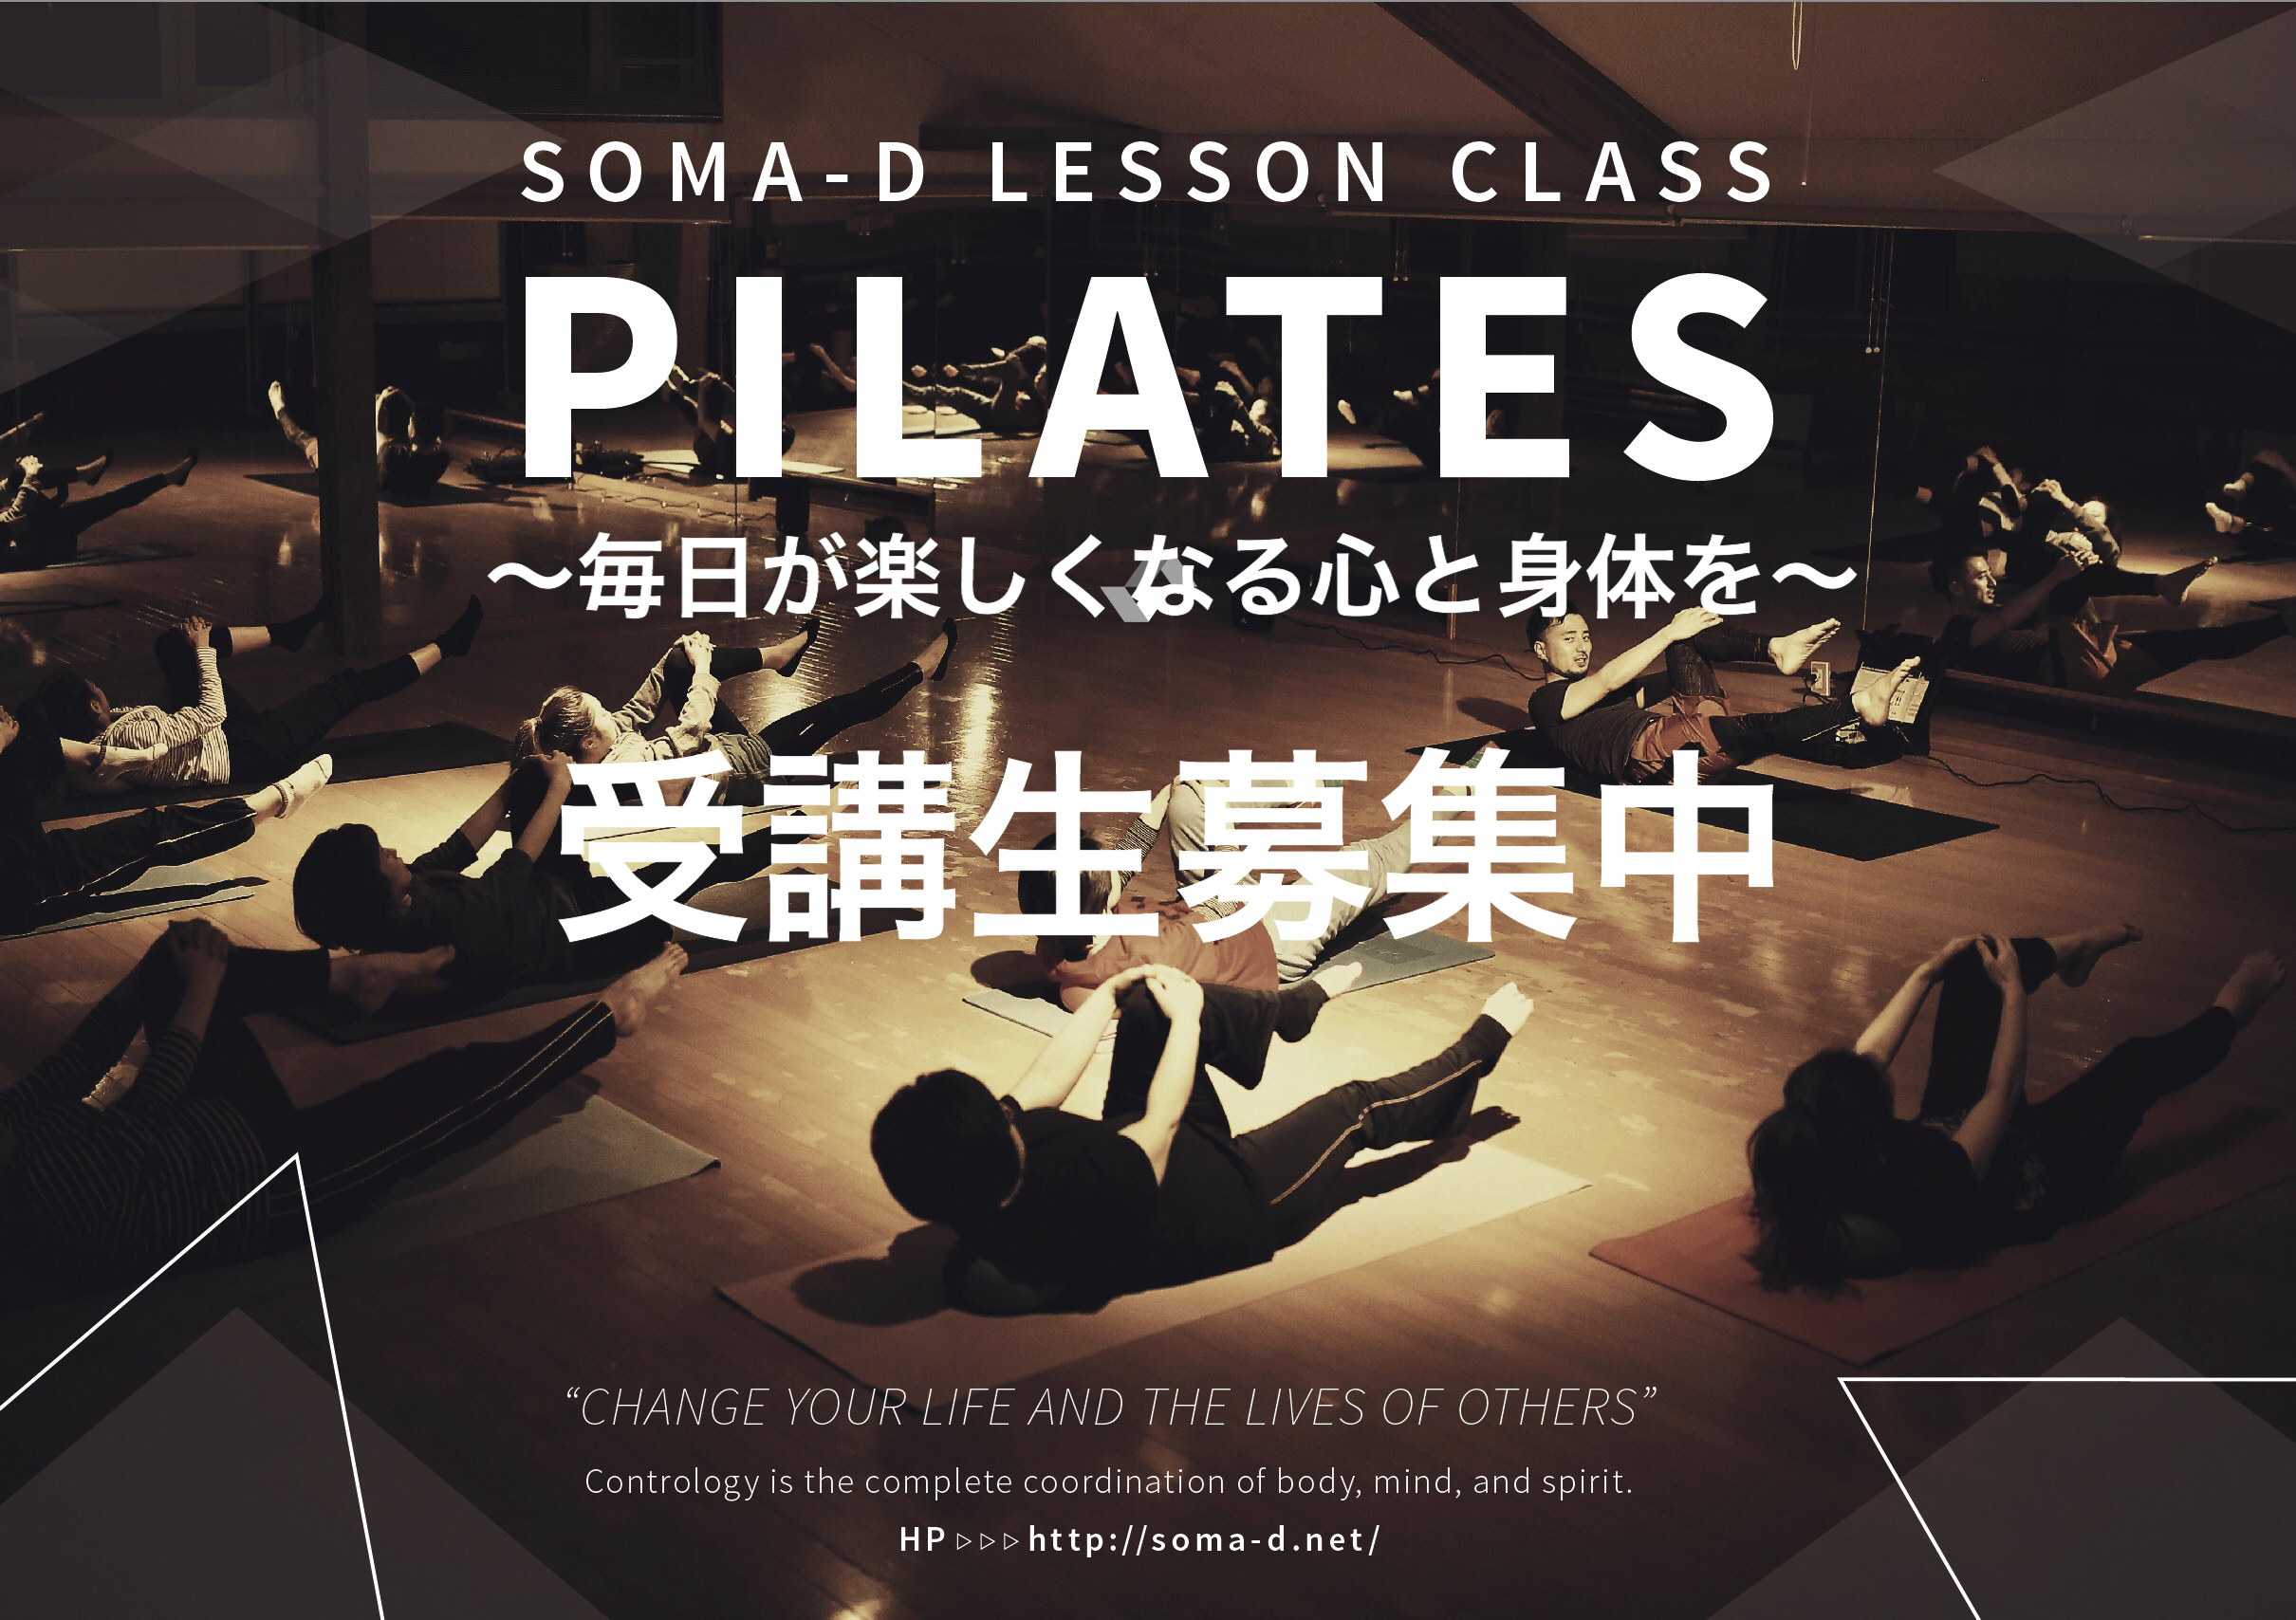 Pilates lesson schedule